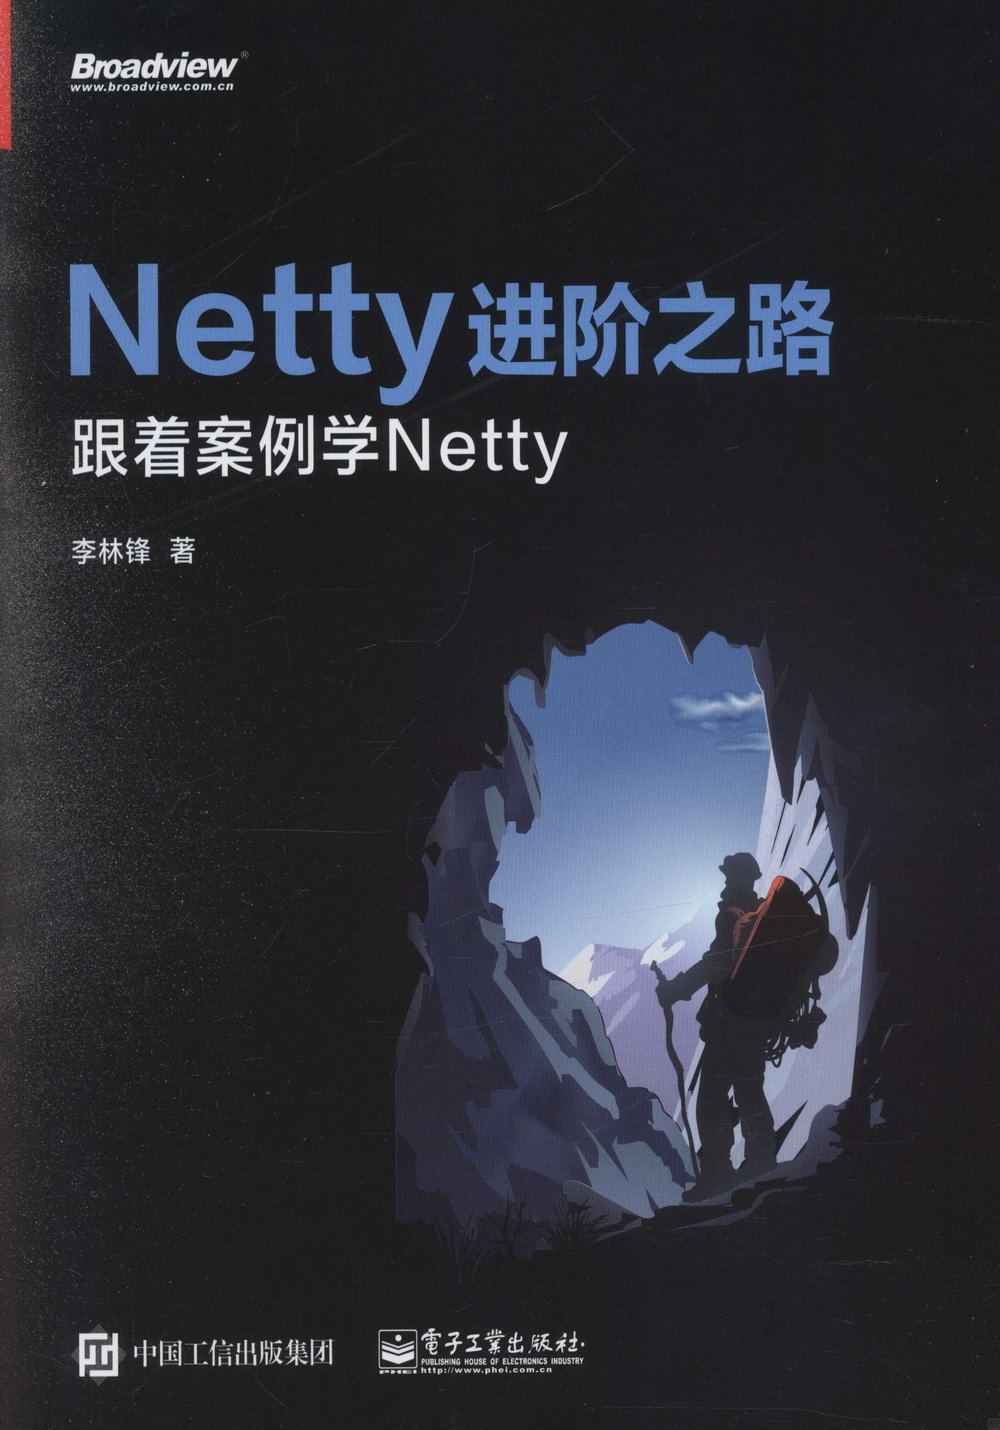 Netty進階之路：跟著案例學Netty